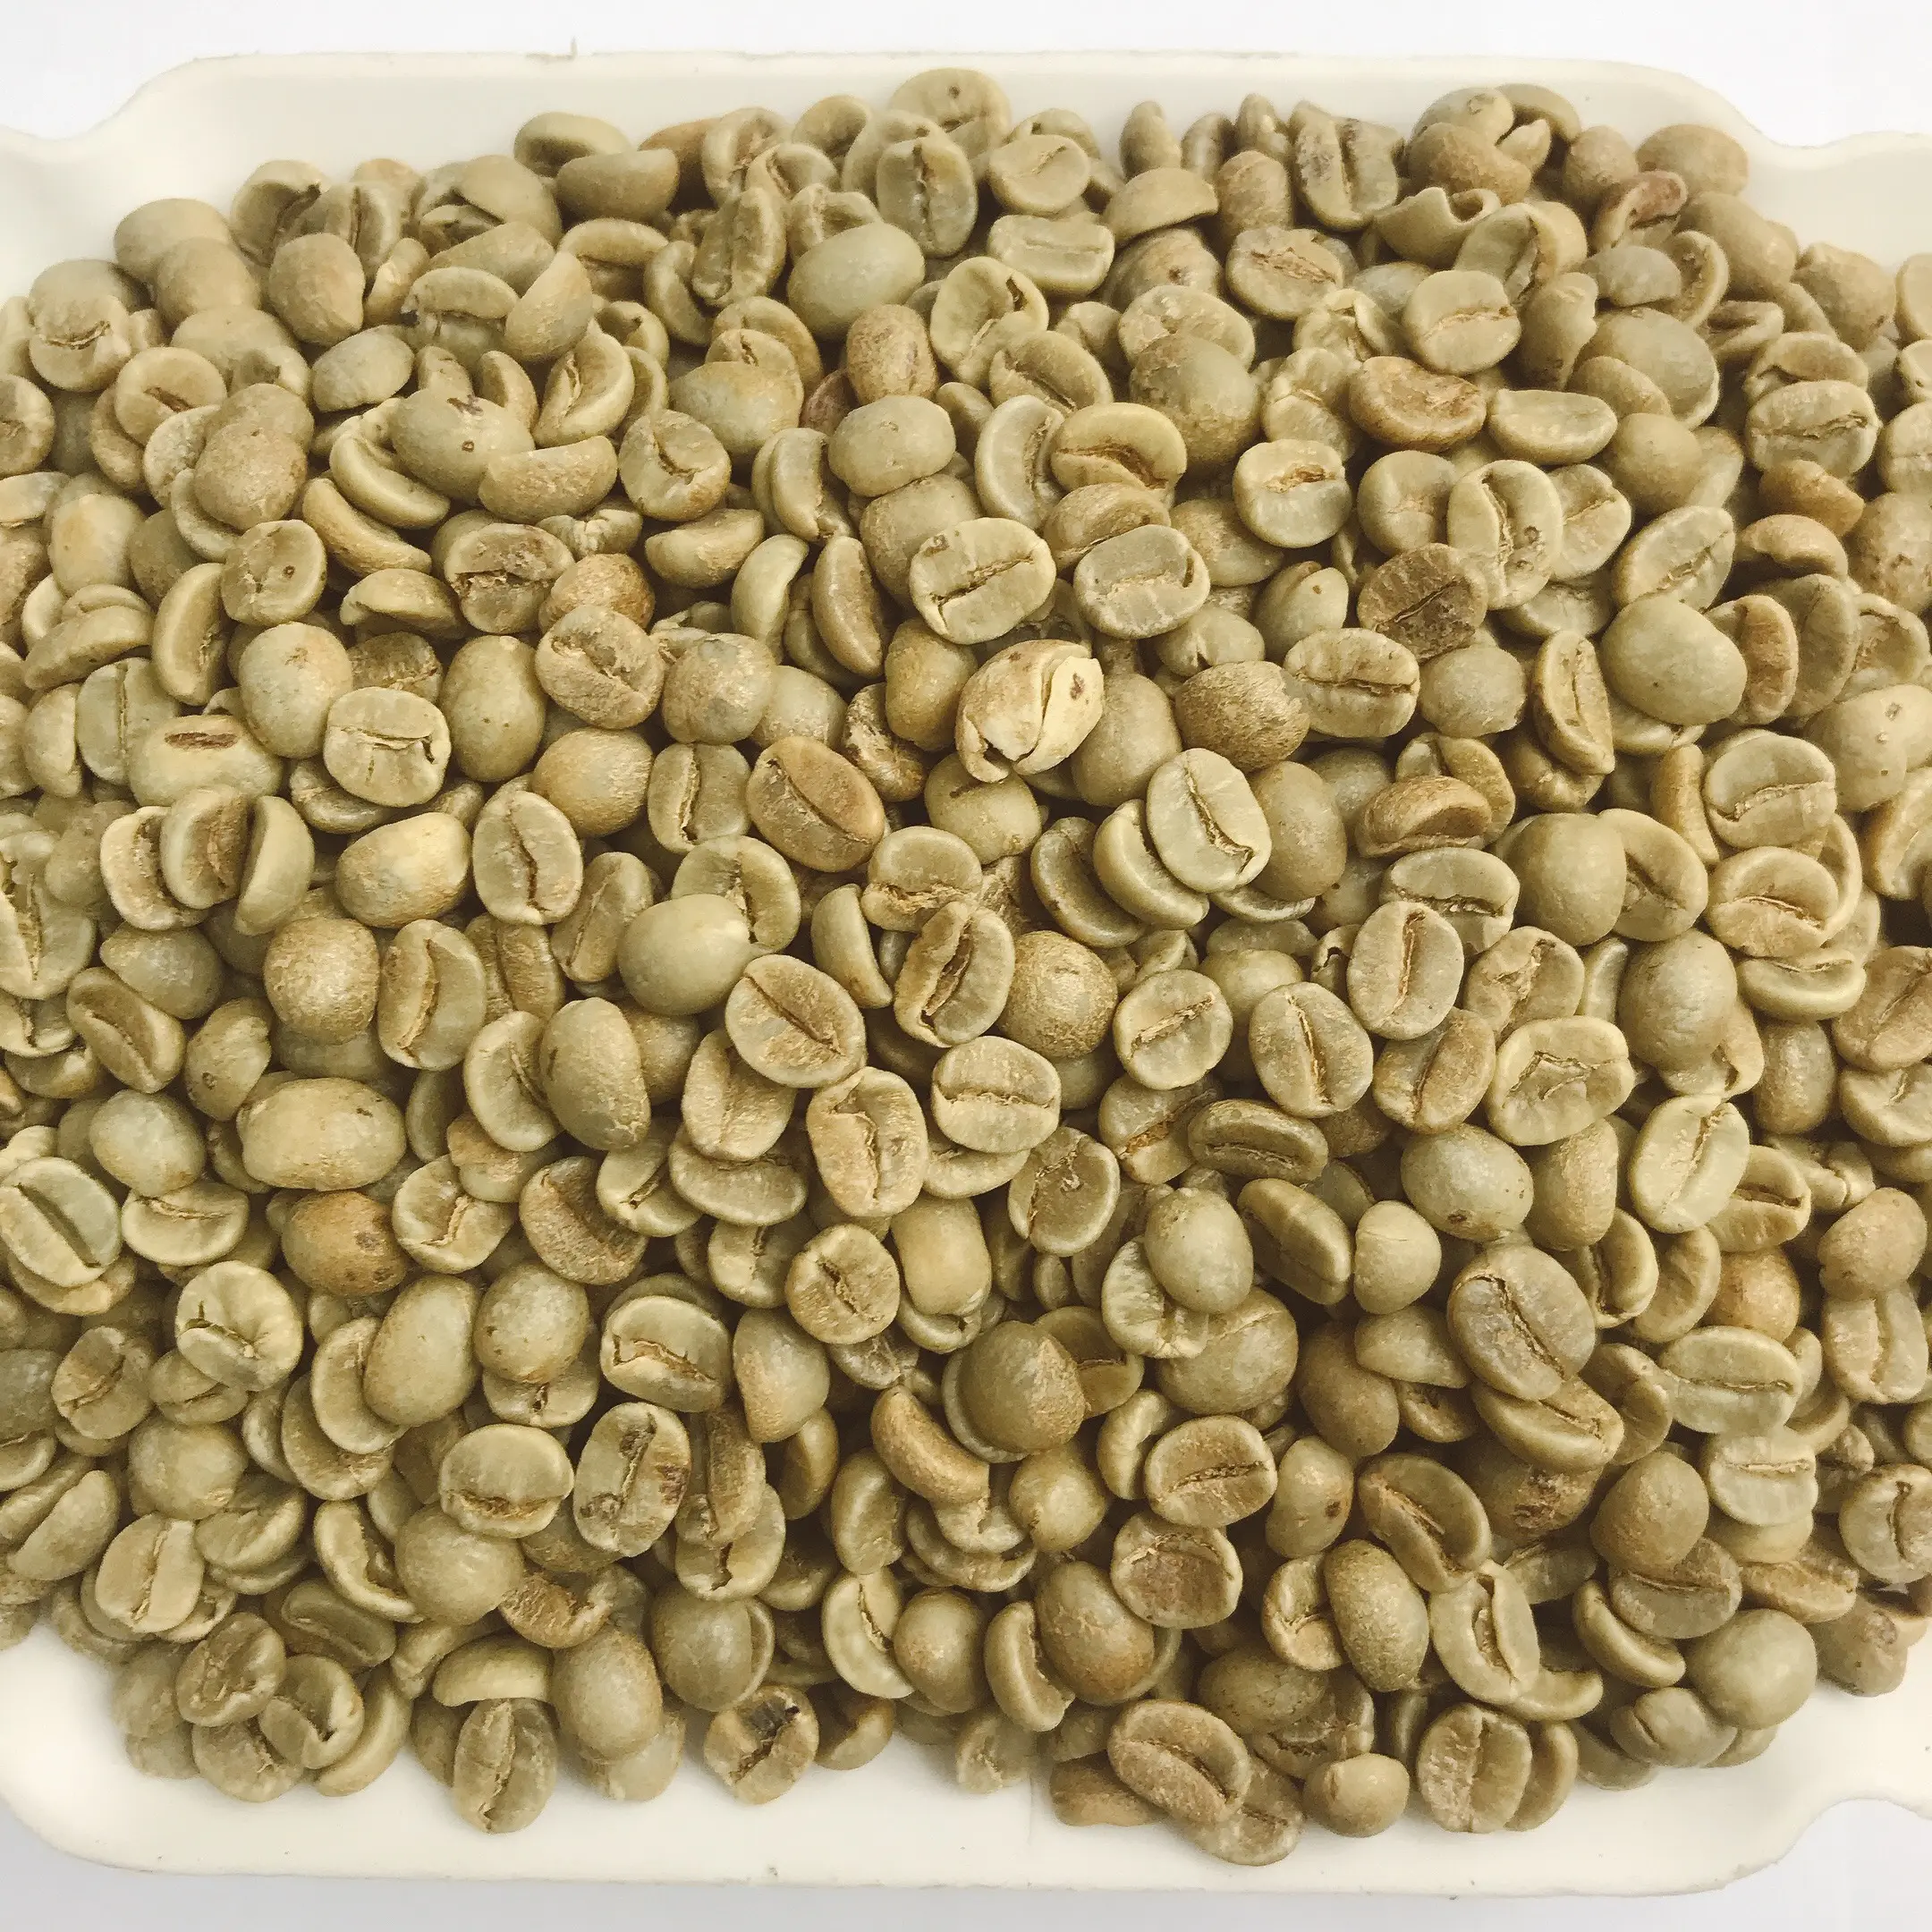 Вьетнамские зеленые кофейные бобы арабика кофе зеленые бобы готовы к экспорту по всему миру для оптовой продажи цельных зерен кофе